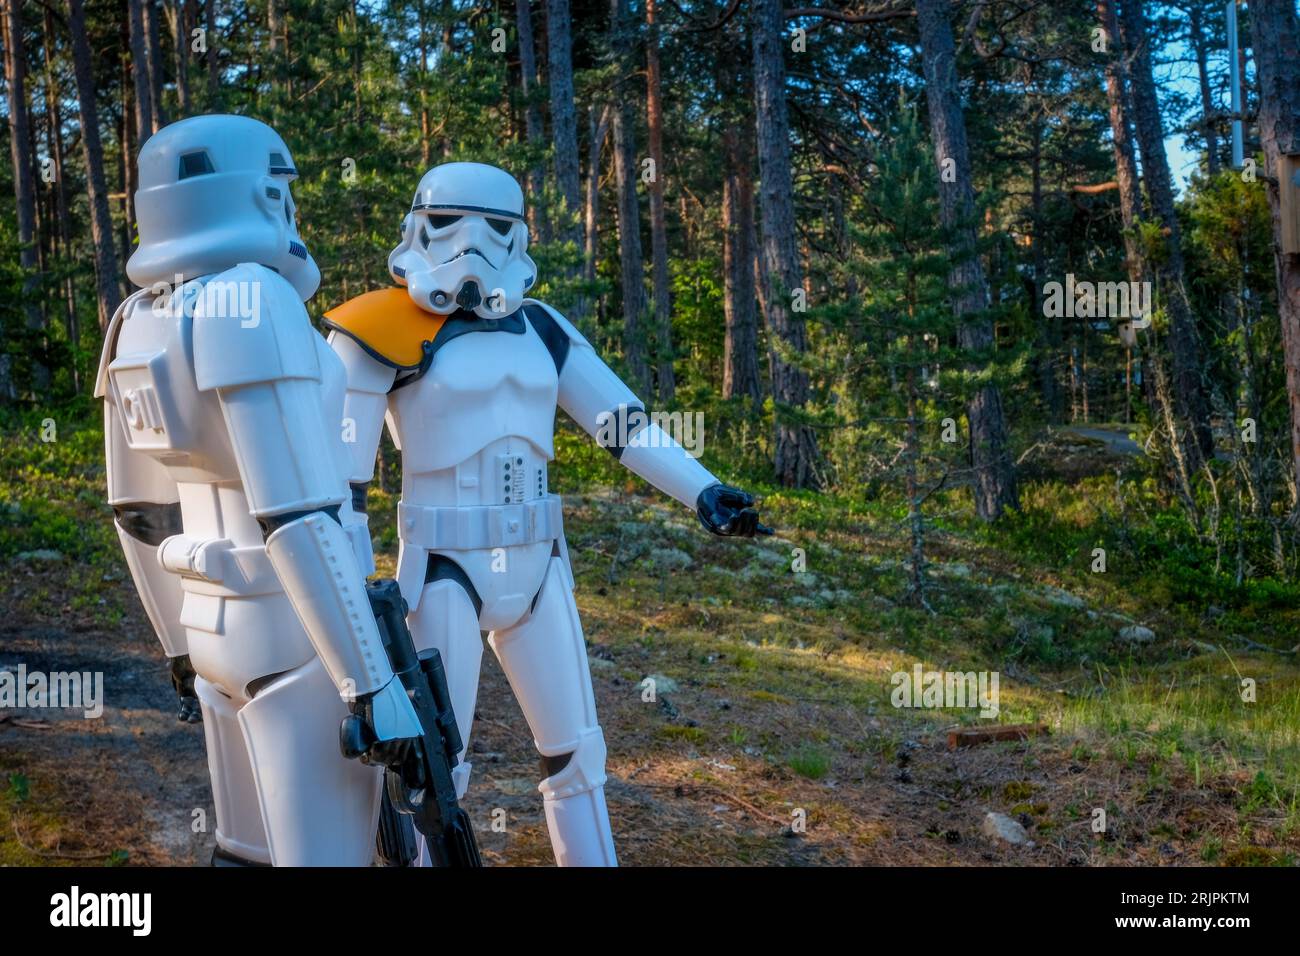 Una action figure di Star Wars stormtrooper Snow Trooper, raffigurante un ufficiale imperiale della trilogia originale Foto Stock